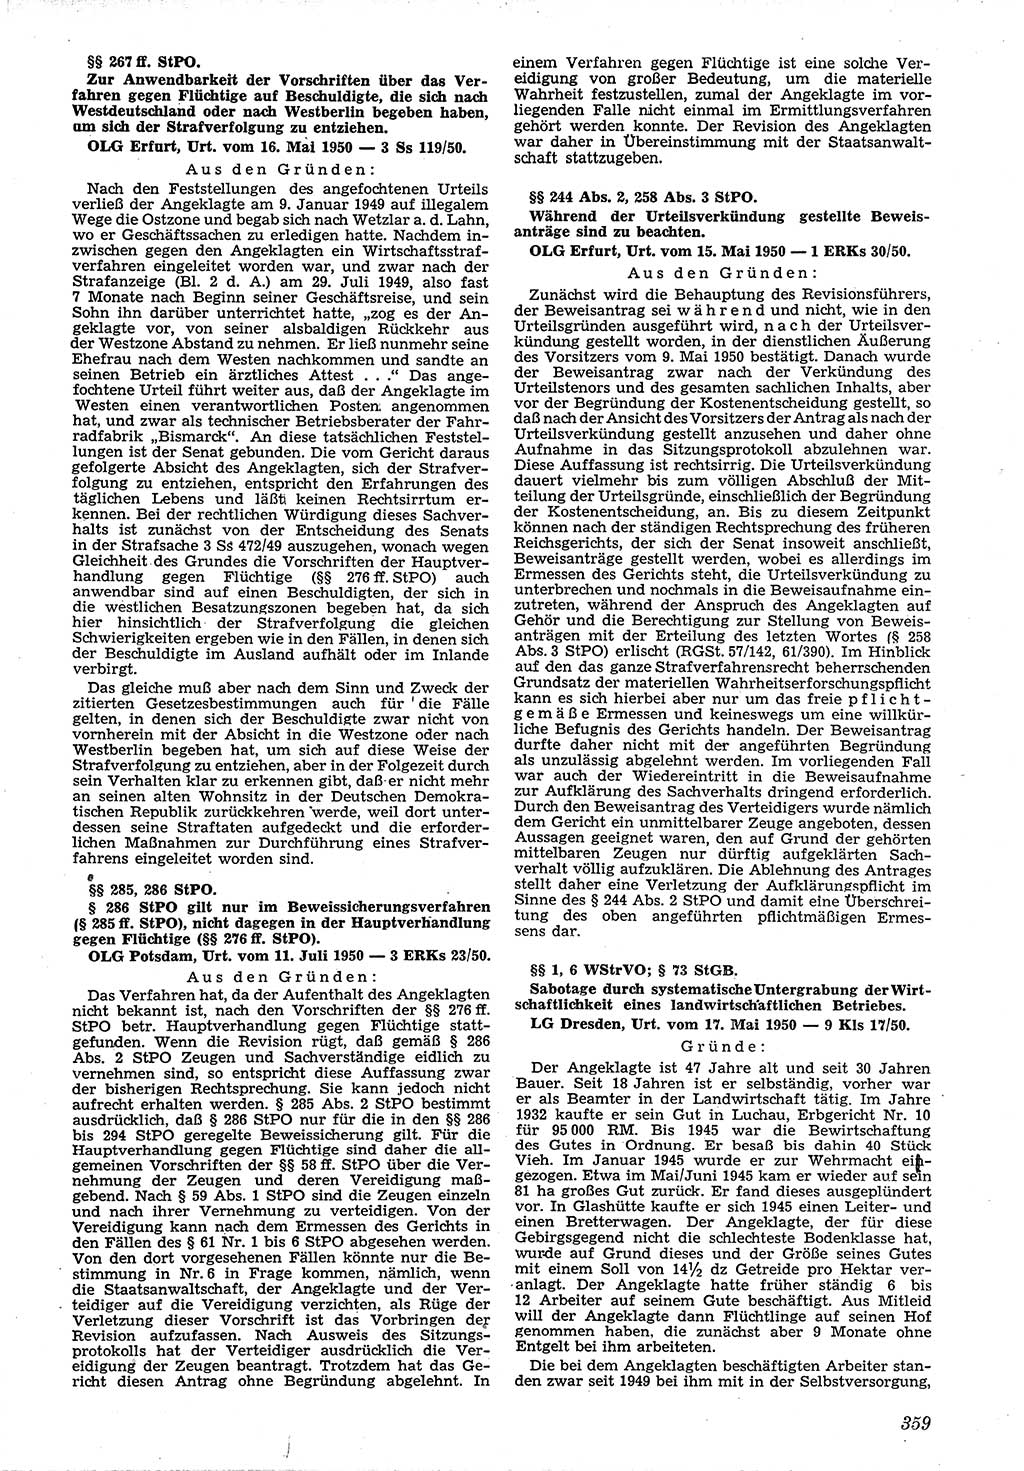 Neue Justiz (NJ), Zeitschrift für Recht und Rechtswissenschaft [Deutsche Demokratische Republik (DDR)], 4. Jahrgang 1950, Seite 359 (NJ DDR 1950, S. 359)